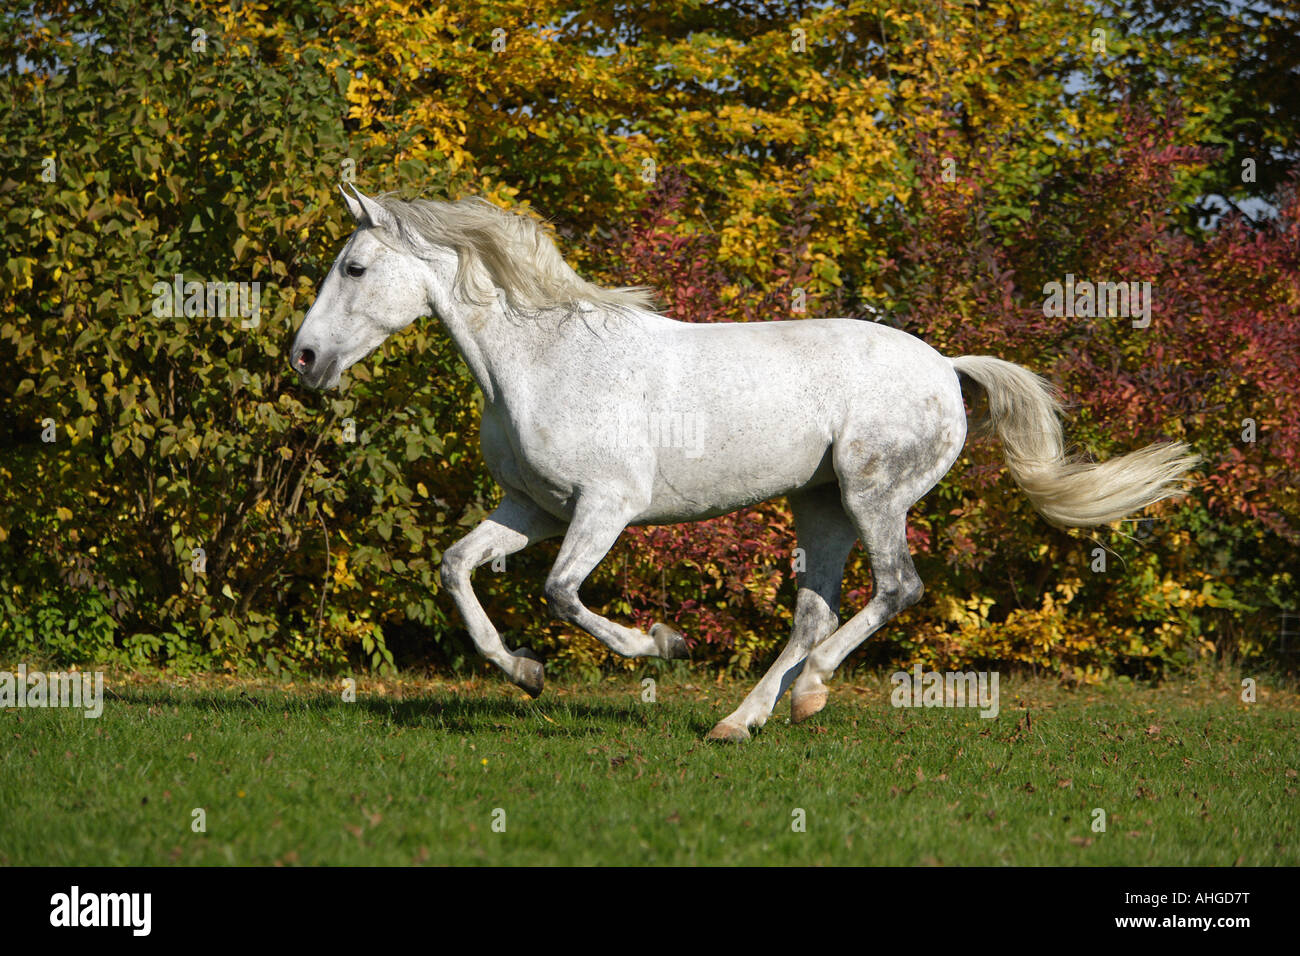 horse (Cruzado) - galloping on meadow Stock Photo